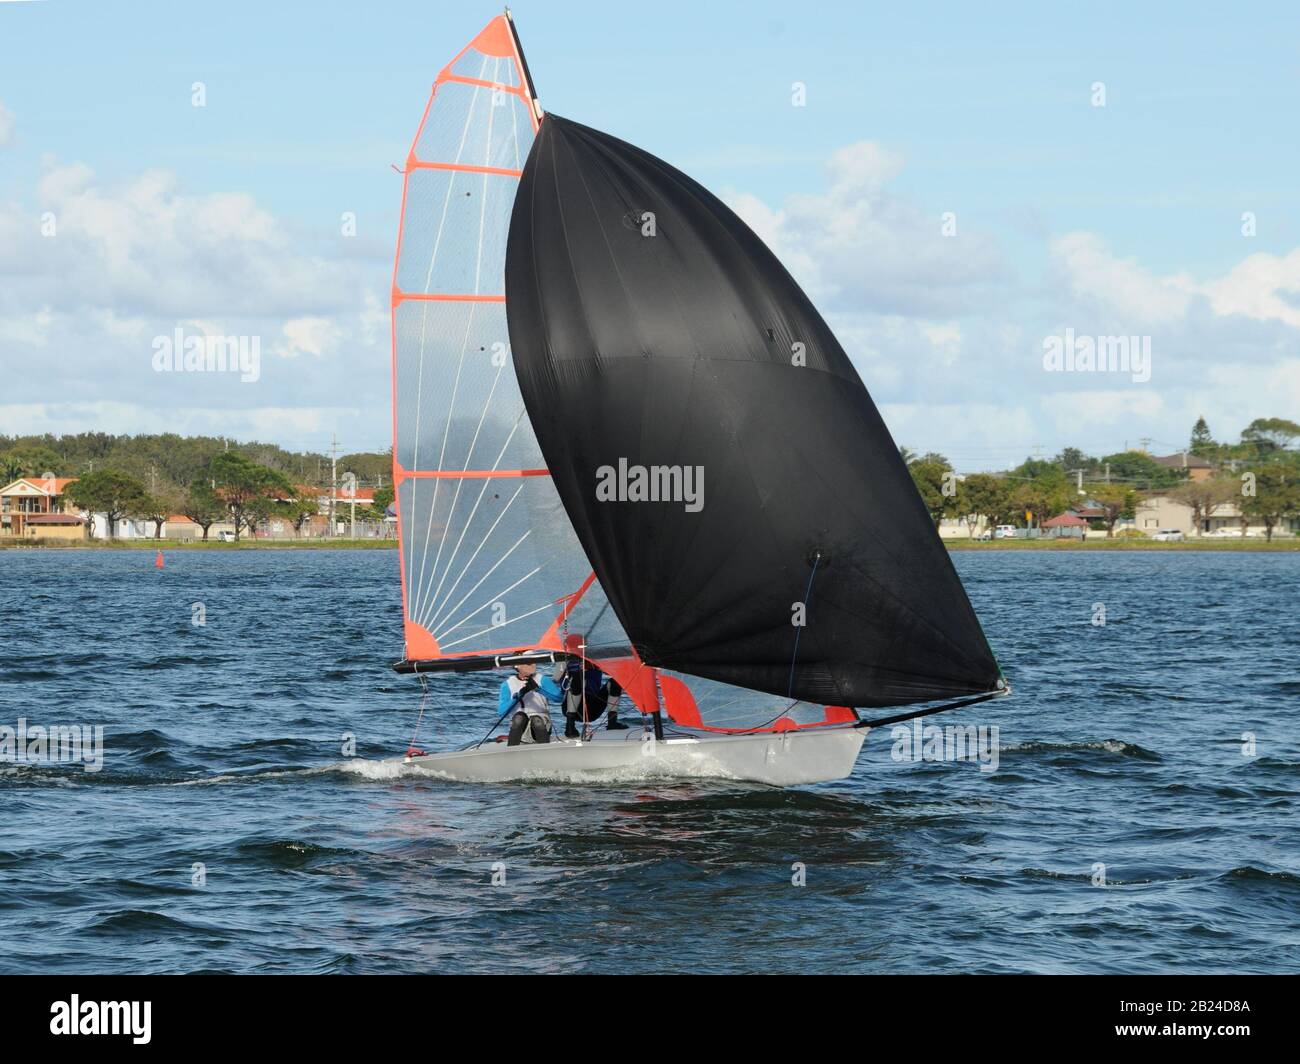 Les enfants courses un petit voilier avec un spinnaker noir à une régate junior de yachting. Travail d'équipe par des marins juniors en course sur le lac d'eau salée Macquarie. Photo Banque D'Images